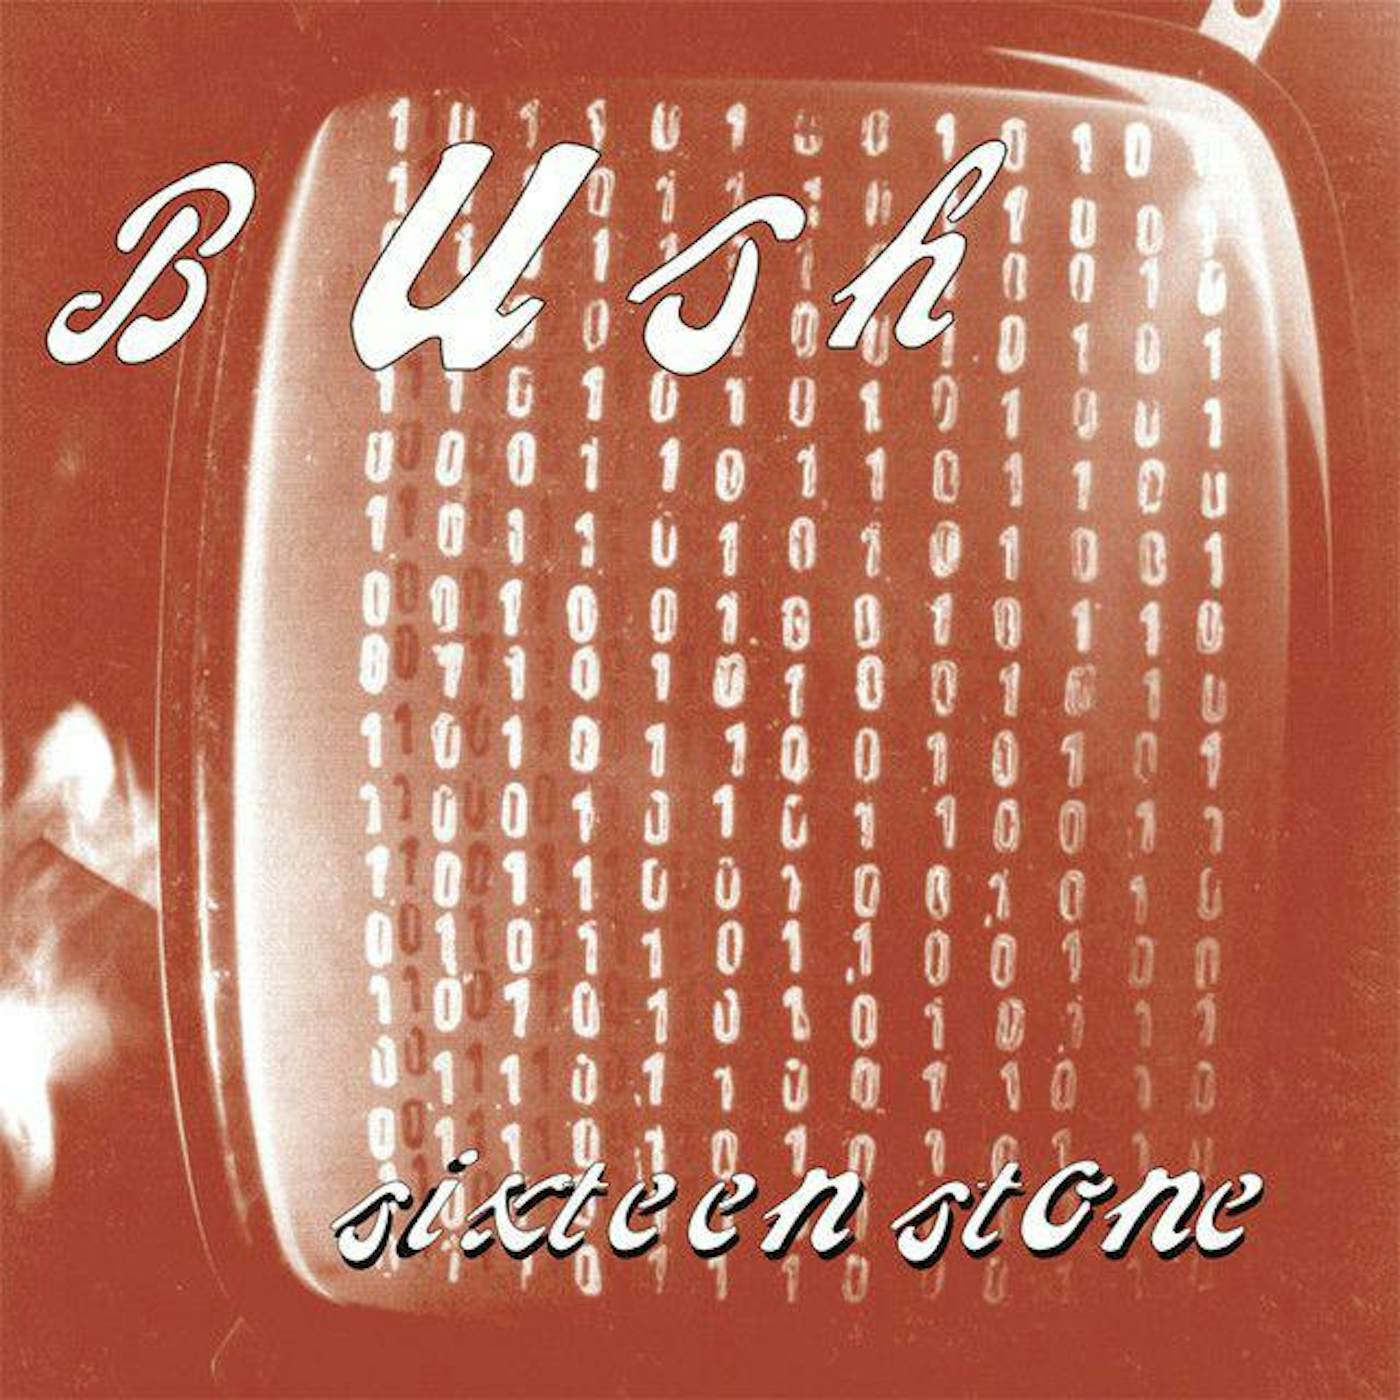 Bush Sixteen Stone (2LP) Vinyl Record